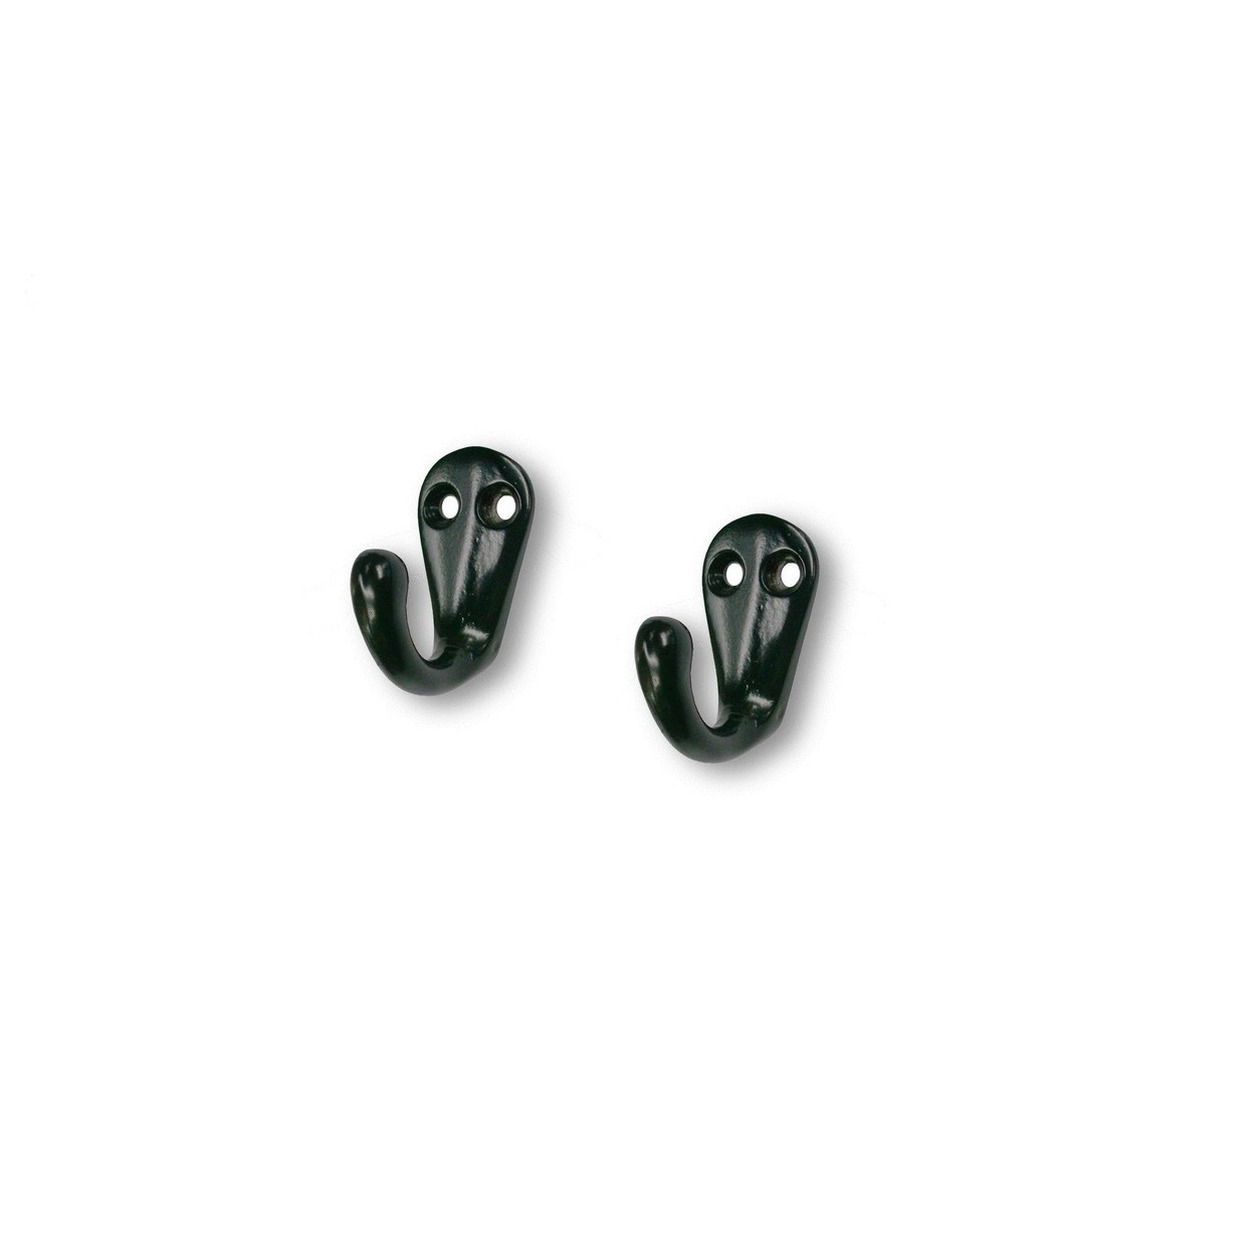 5x Zwarte korte garderobe haakjes-jashaken-kapstokhaakjes metaal 3,3 x 4,1 cm